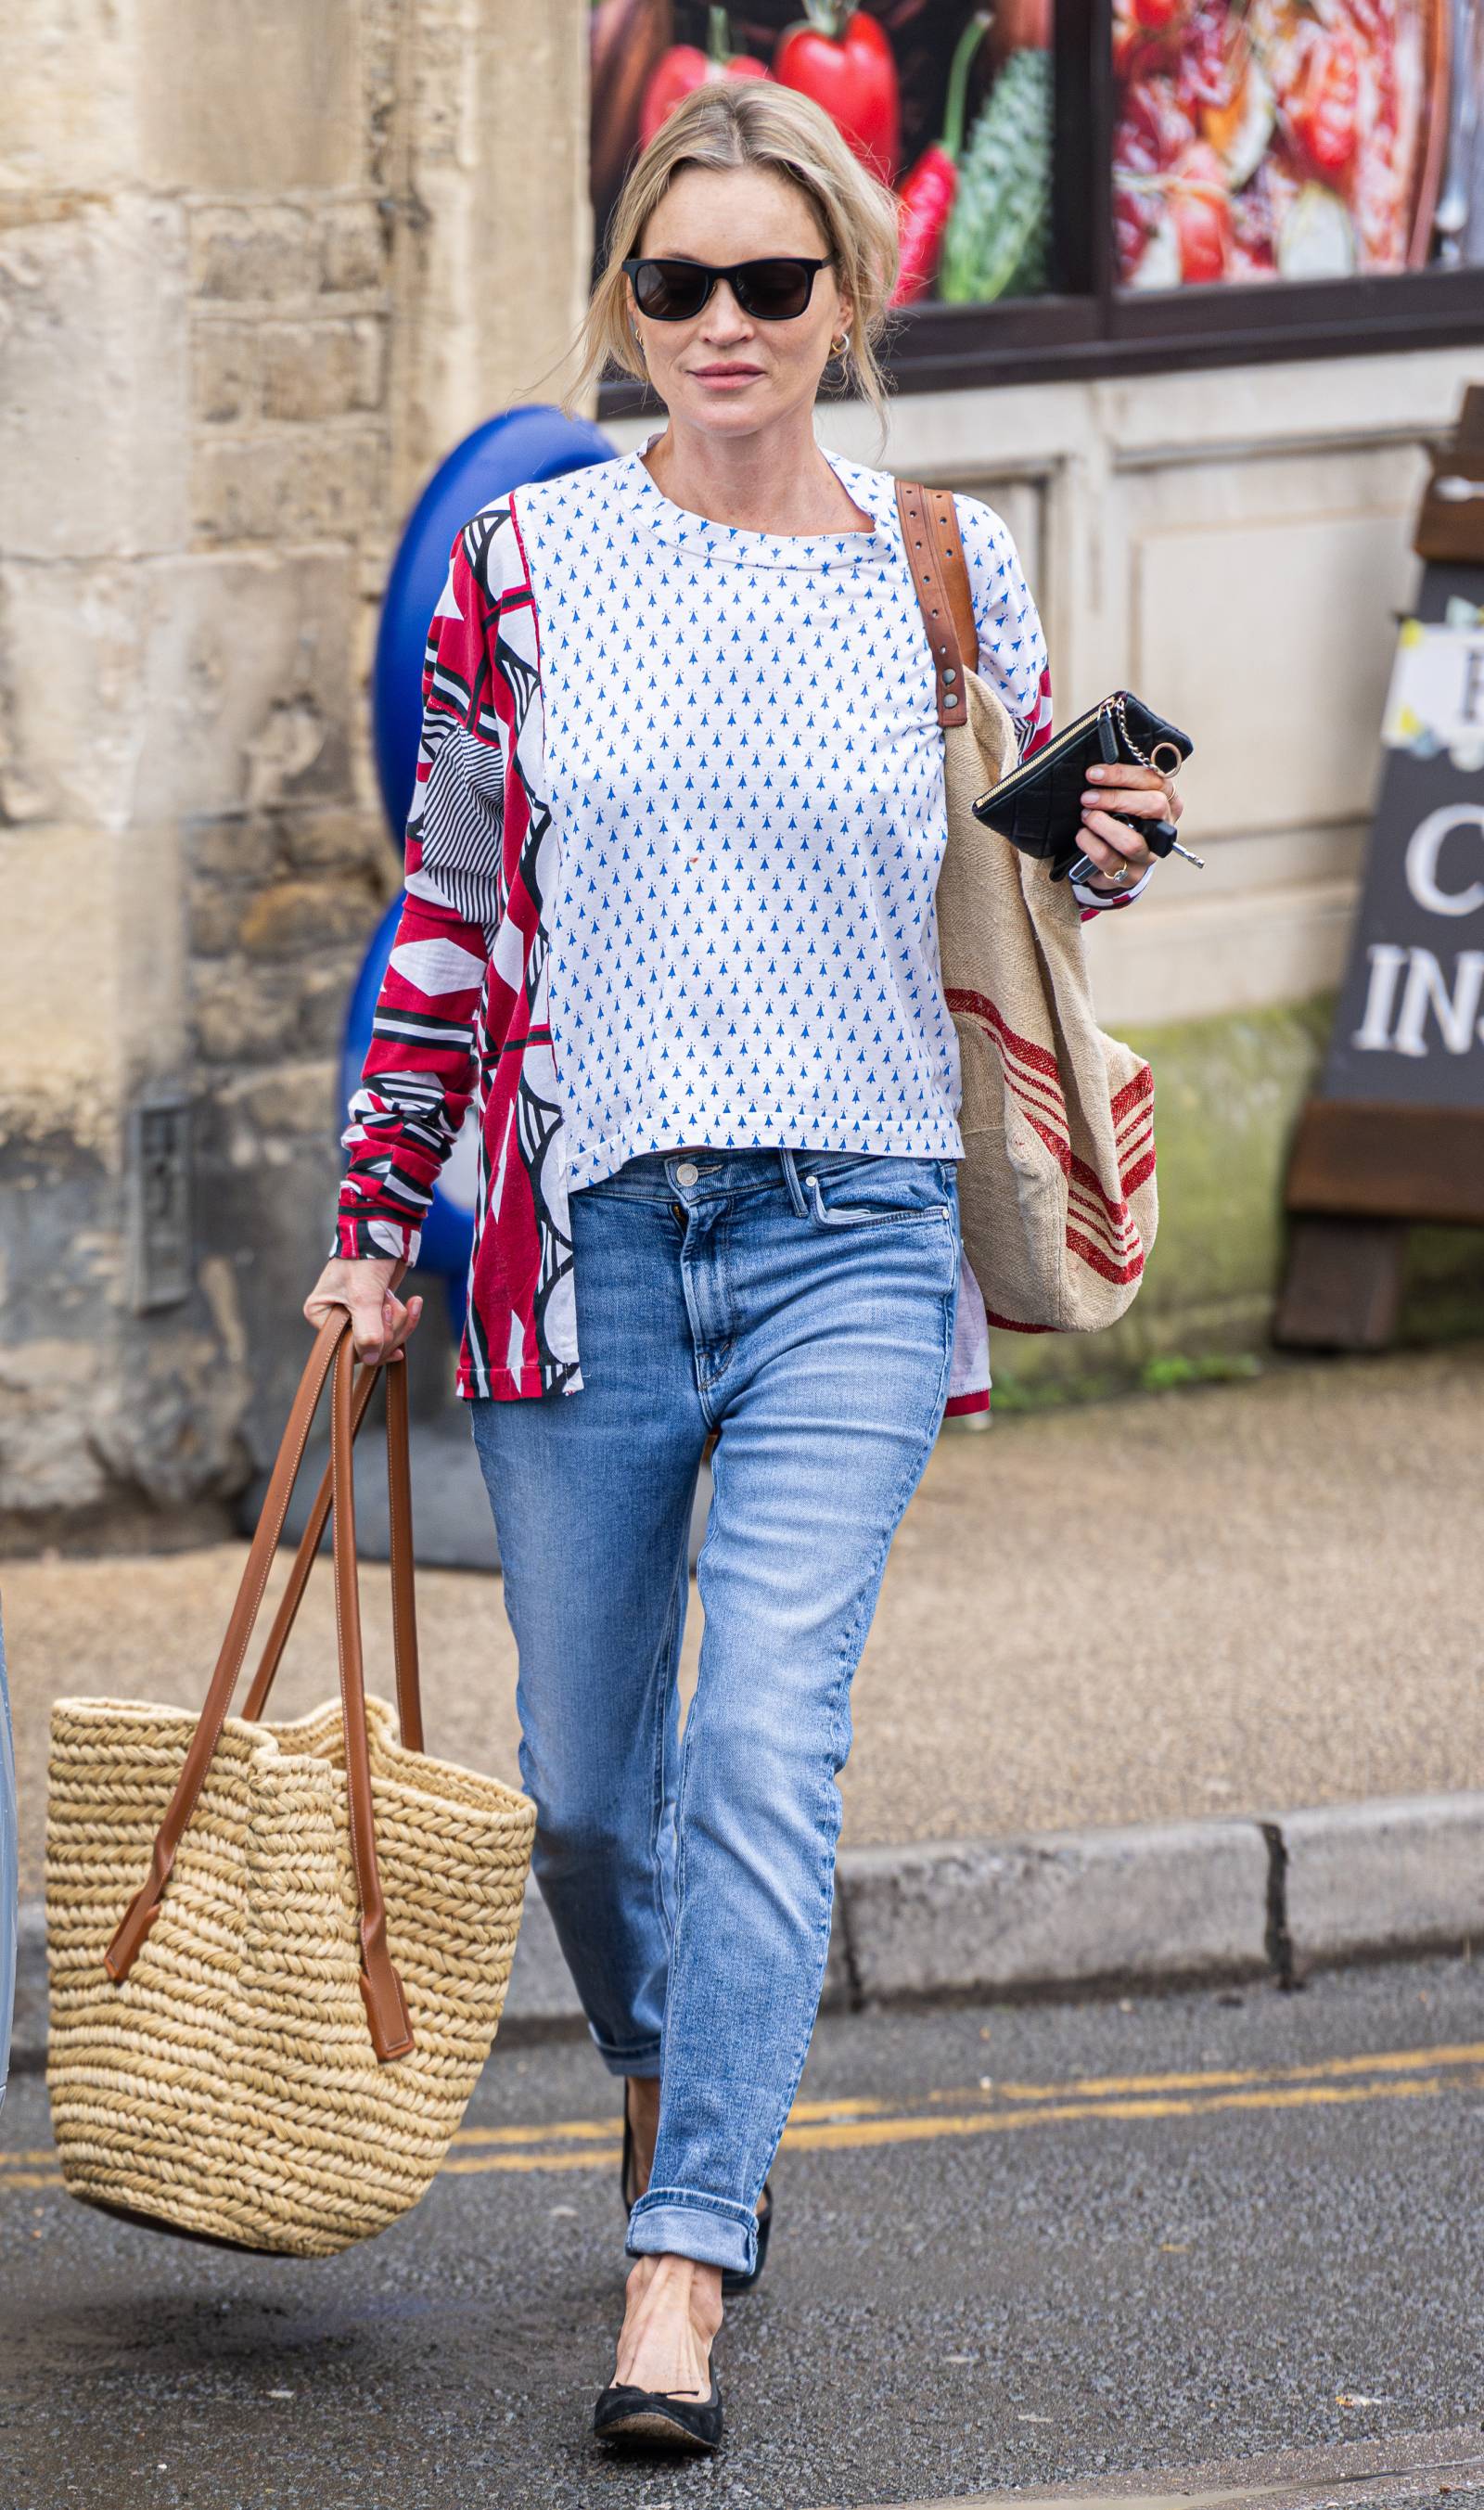 Kate Moss w podwieniętych skinny jeans i balerinkach / (Fot. Robert Wakeham / SplashNews.com/East News)